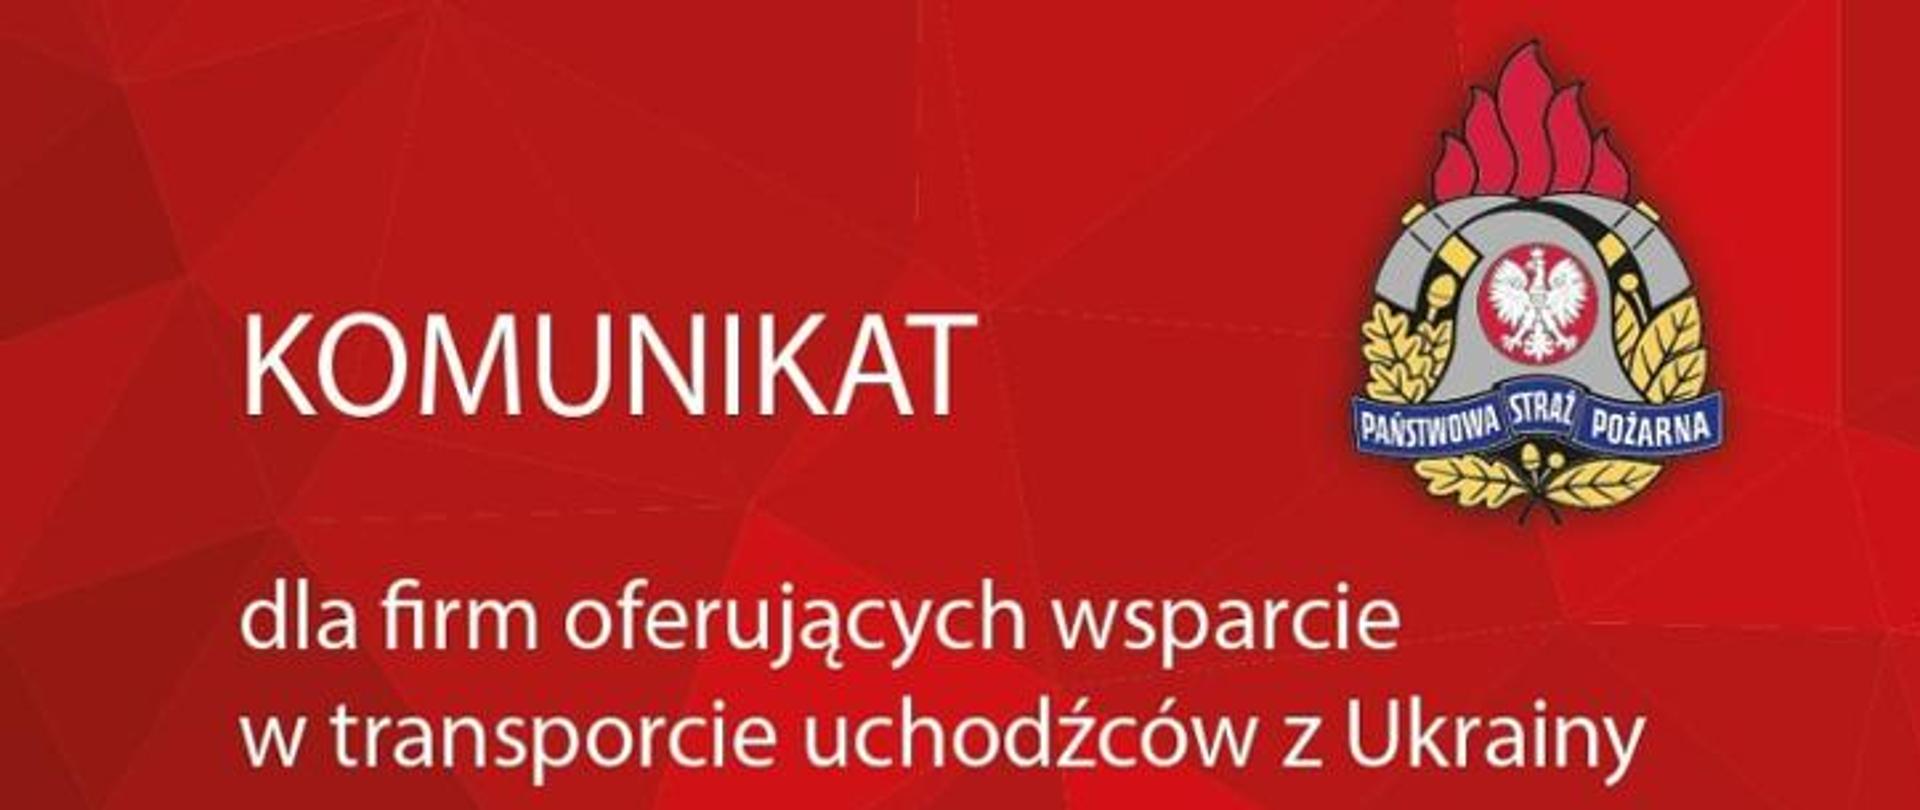 Na czerwonym tle widnieje napis "Komunikat dla firm oferujących wsparcie w transporcie uchodźców z Ukrainy" oraz logo PSP